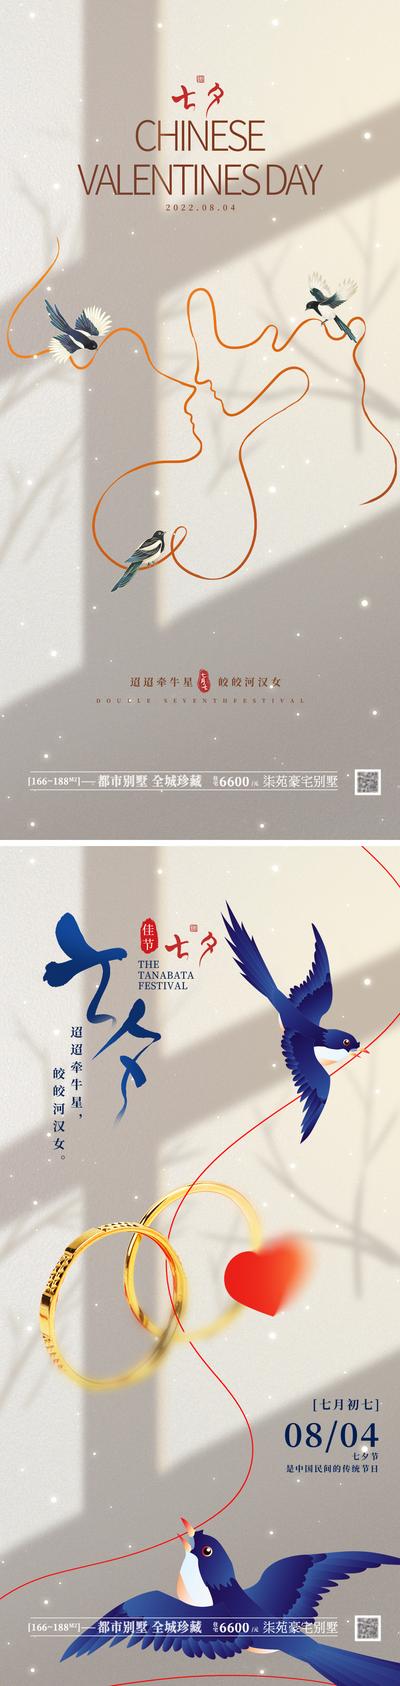 【南门网】海报 房地产 中国传统节日 七夕 情人节 甜蜜 线条 国潮 喜鹊 鹊桥